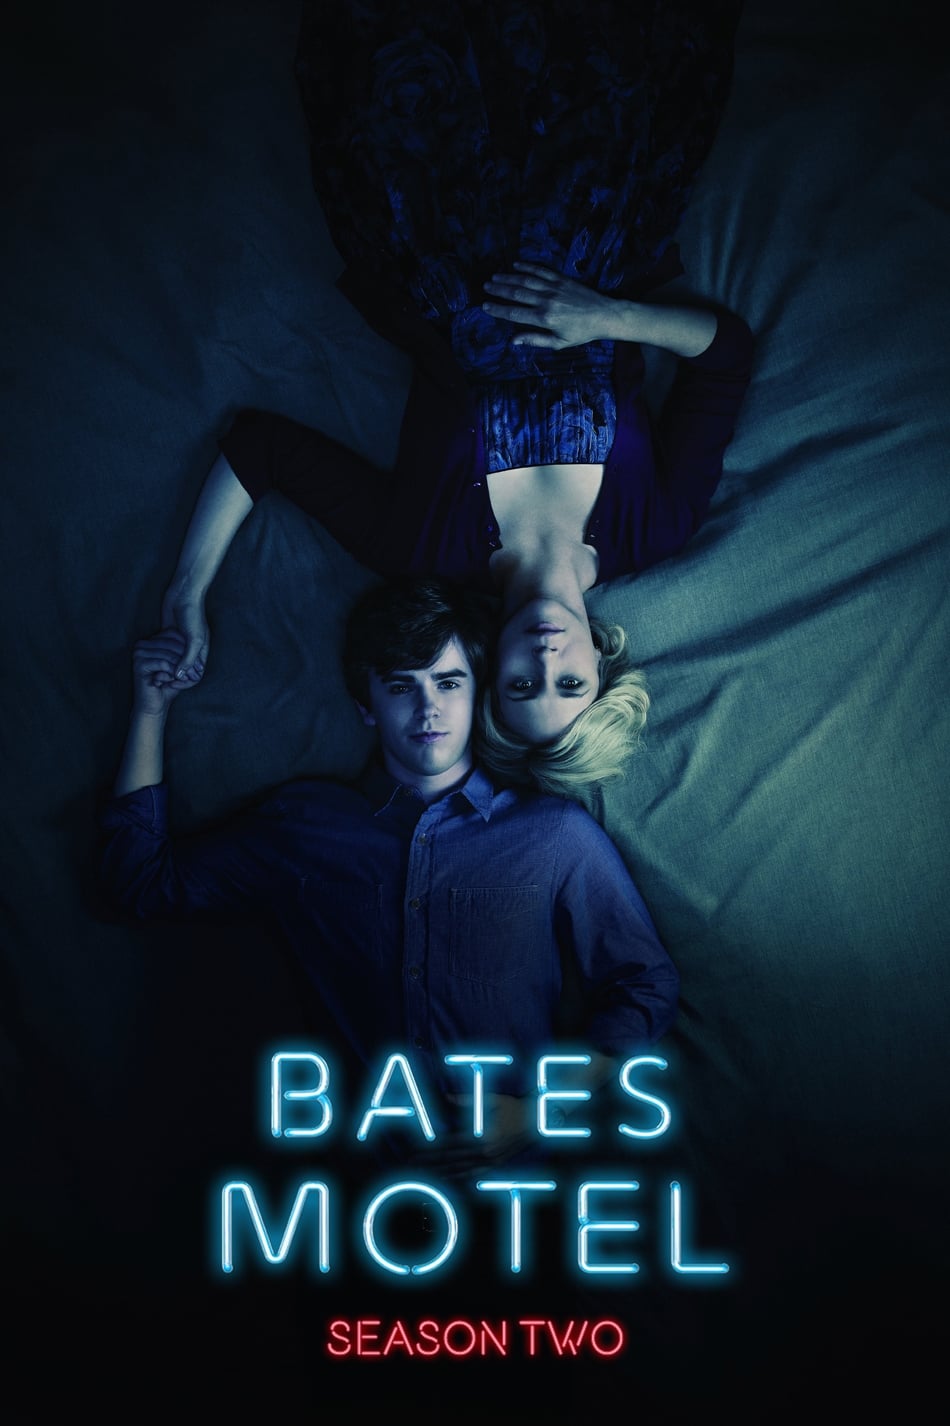 ดูหนังออนไลน์ฟรี Bates Motel (2014) Season 2 ซับไทย EP 10 เบส โมเทล ปี2 ตอนที่10 (ซับไทย)